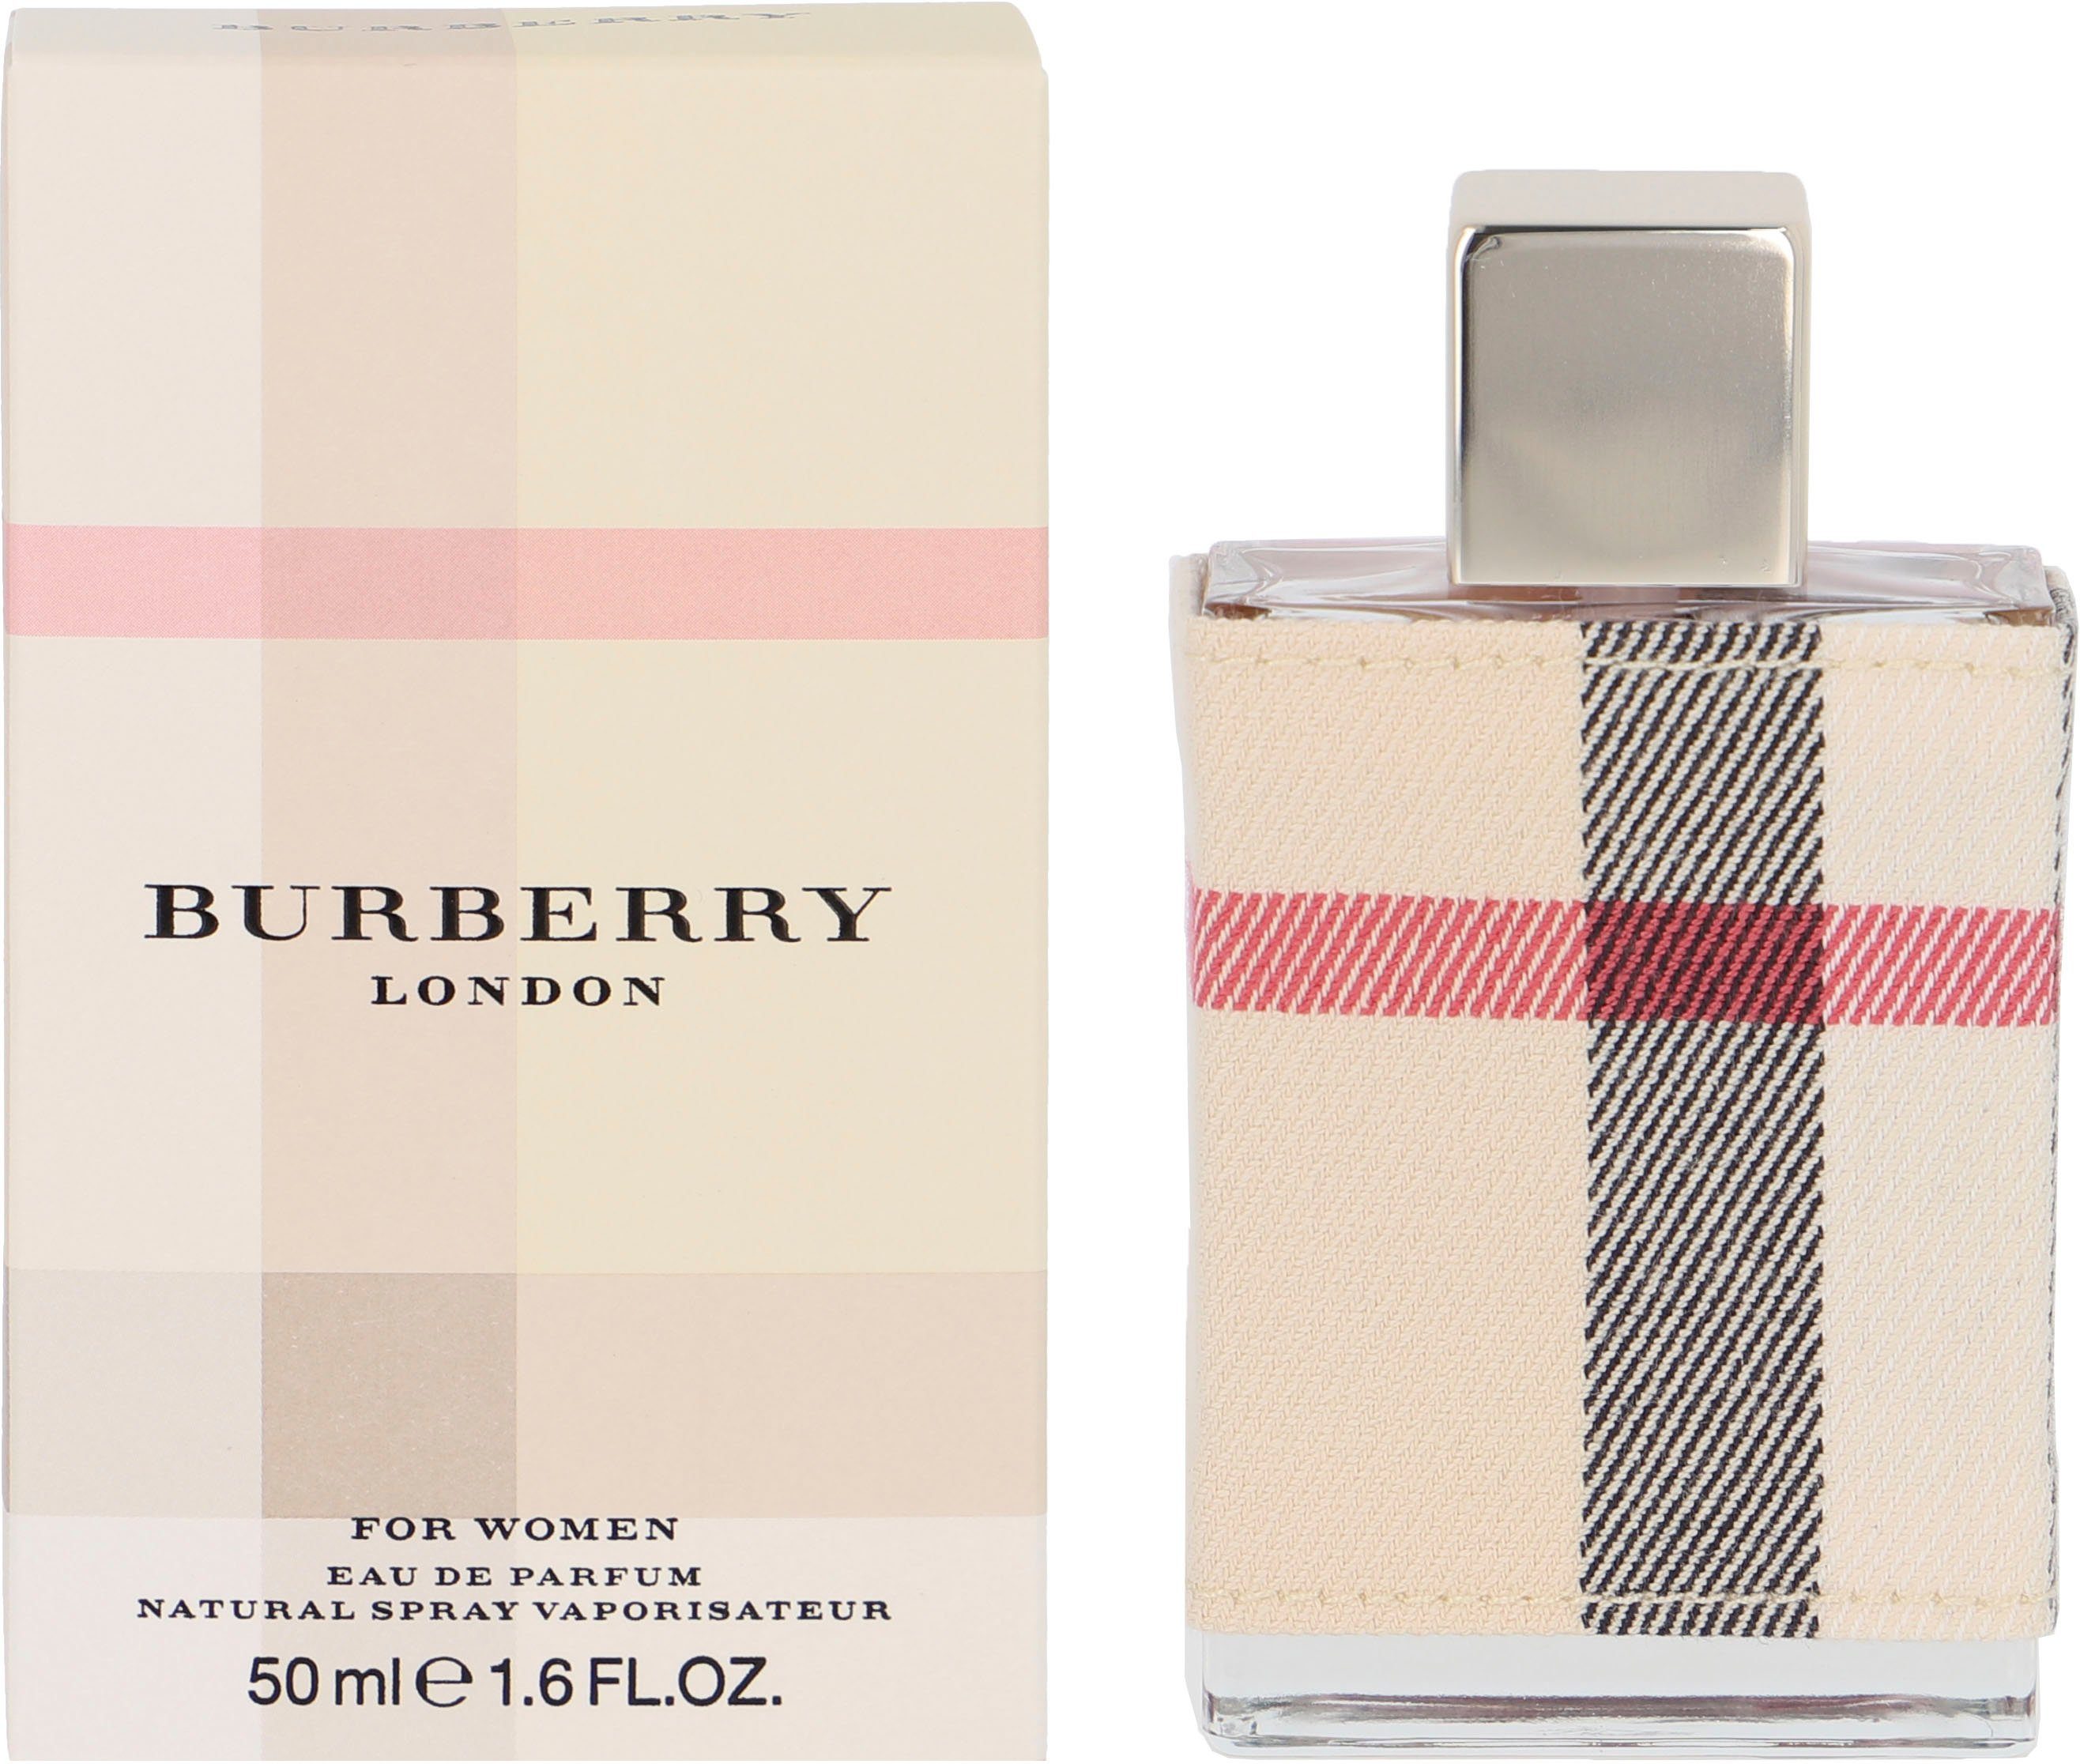 BURBERRY de London Parfum Eau